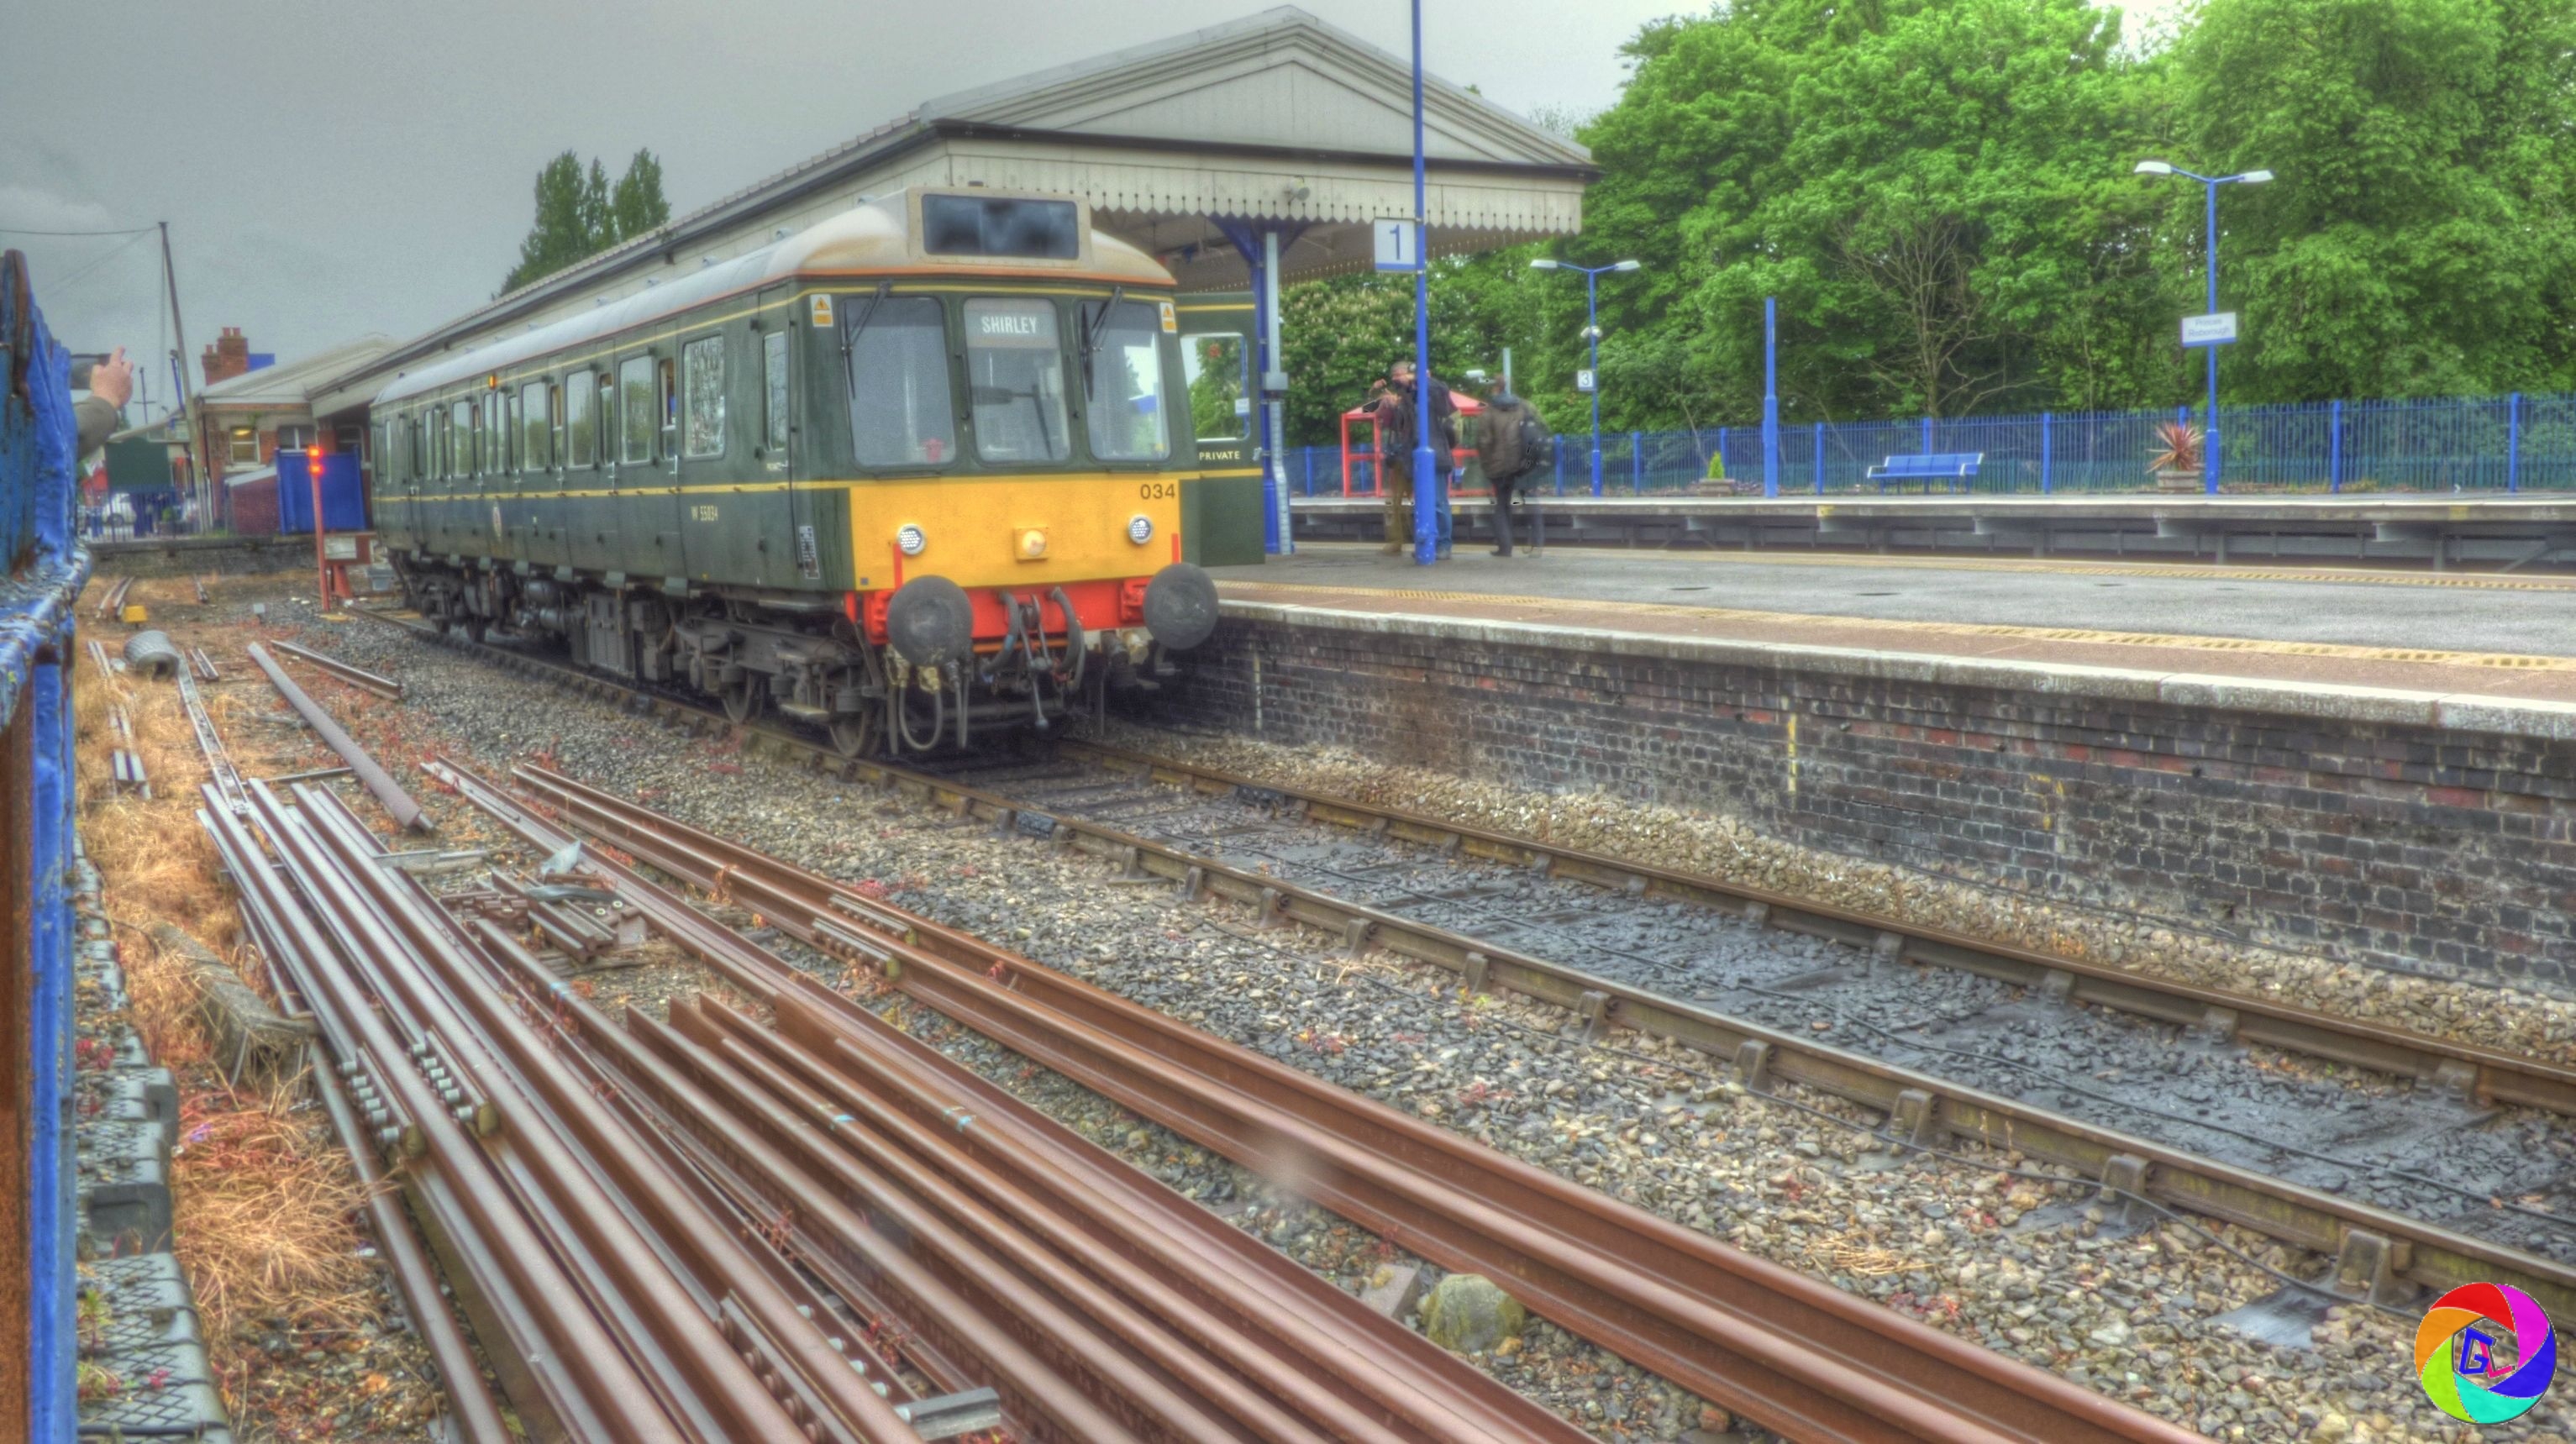 Last week of old trains in use on Aylesbury line